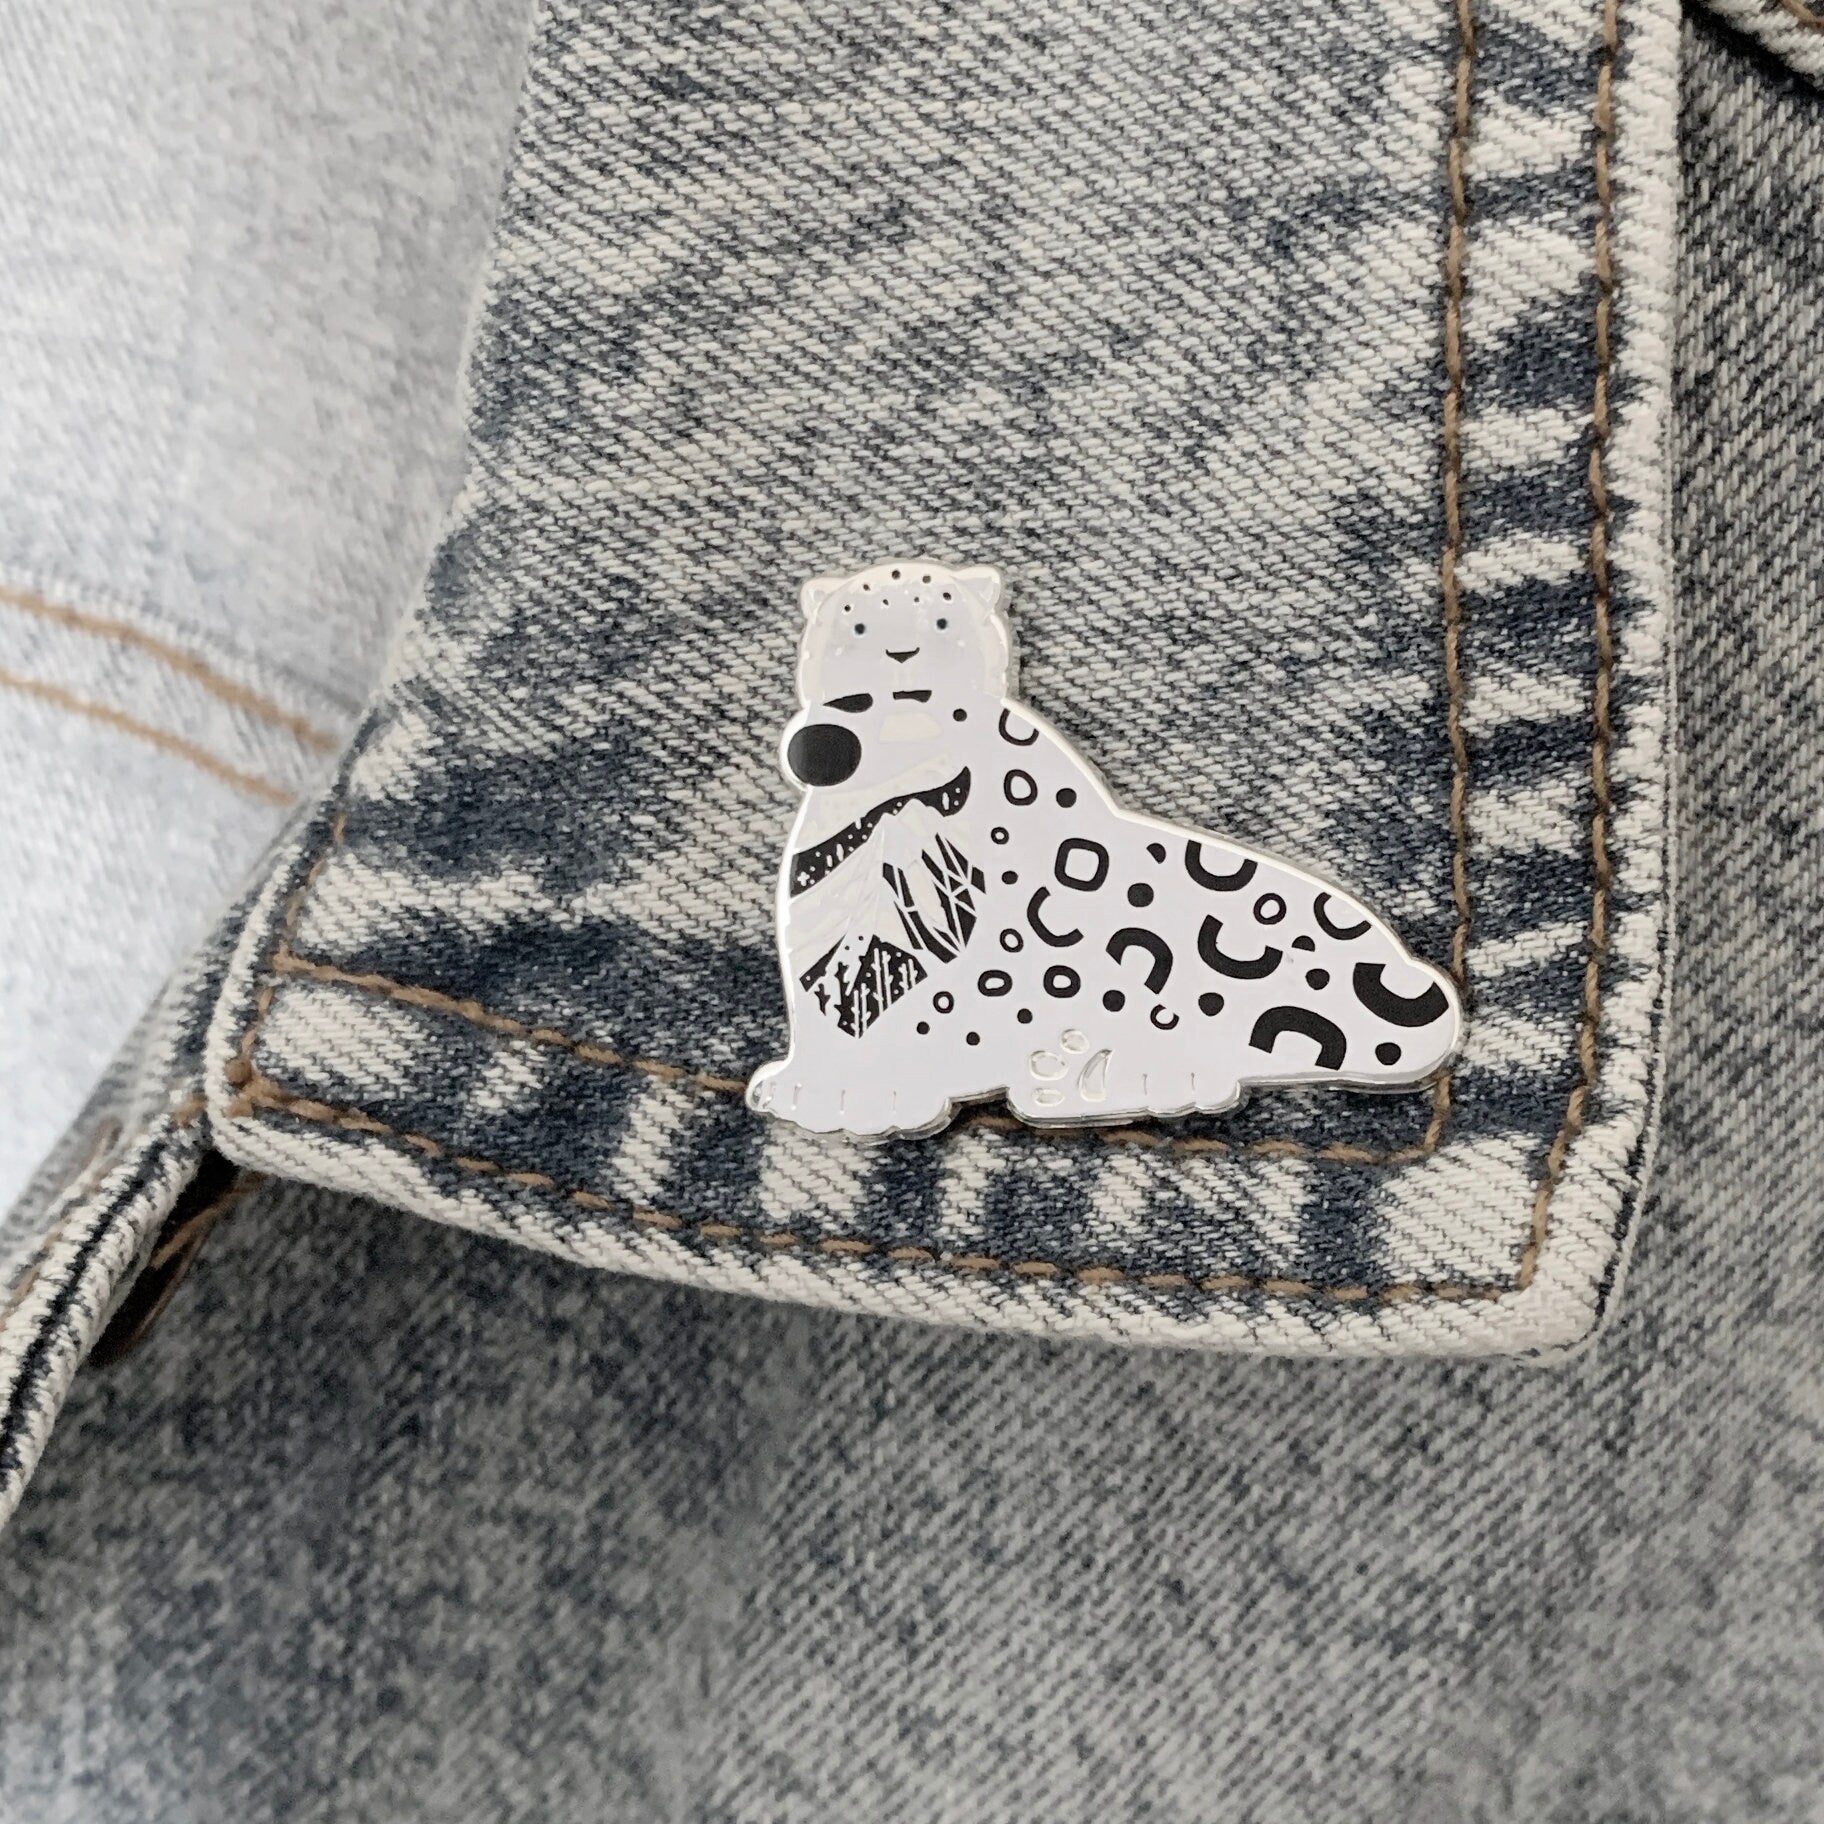 Snow Leopard enamel pin